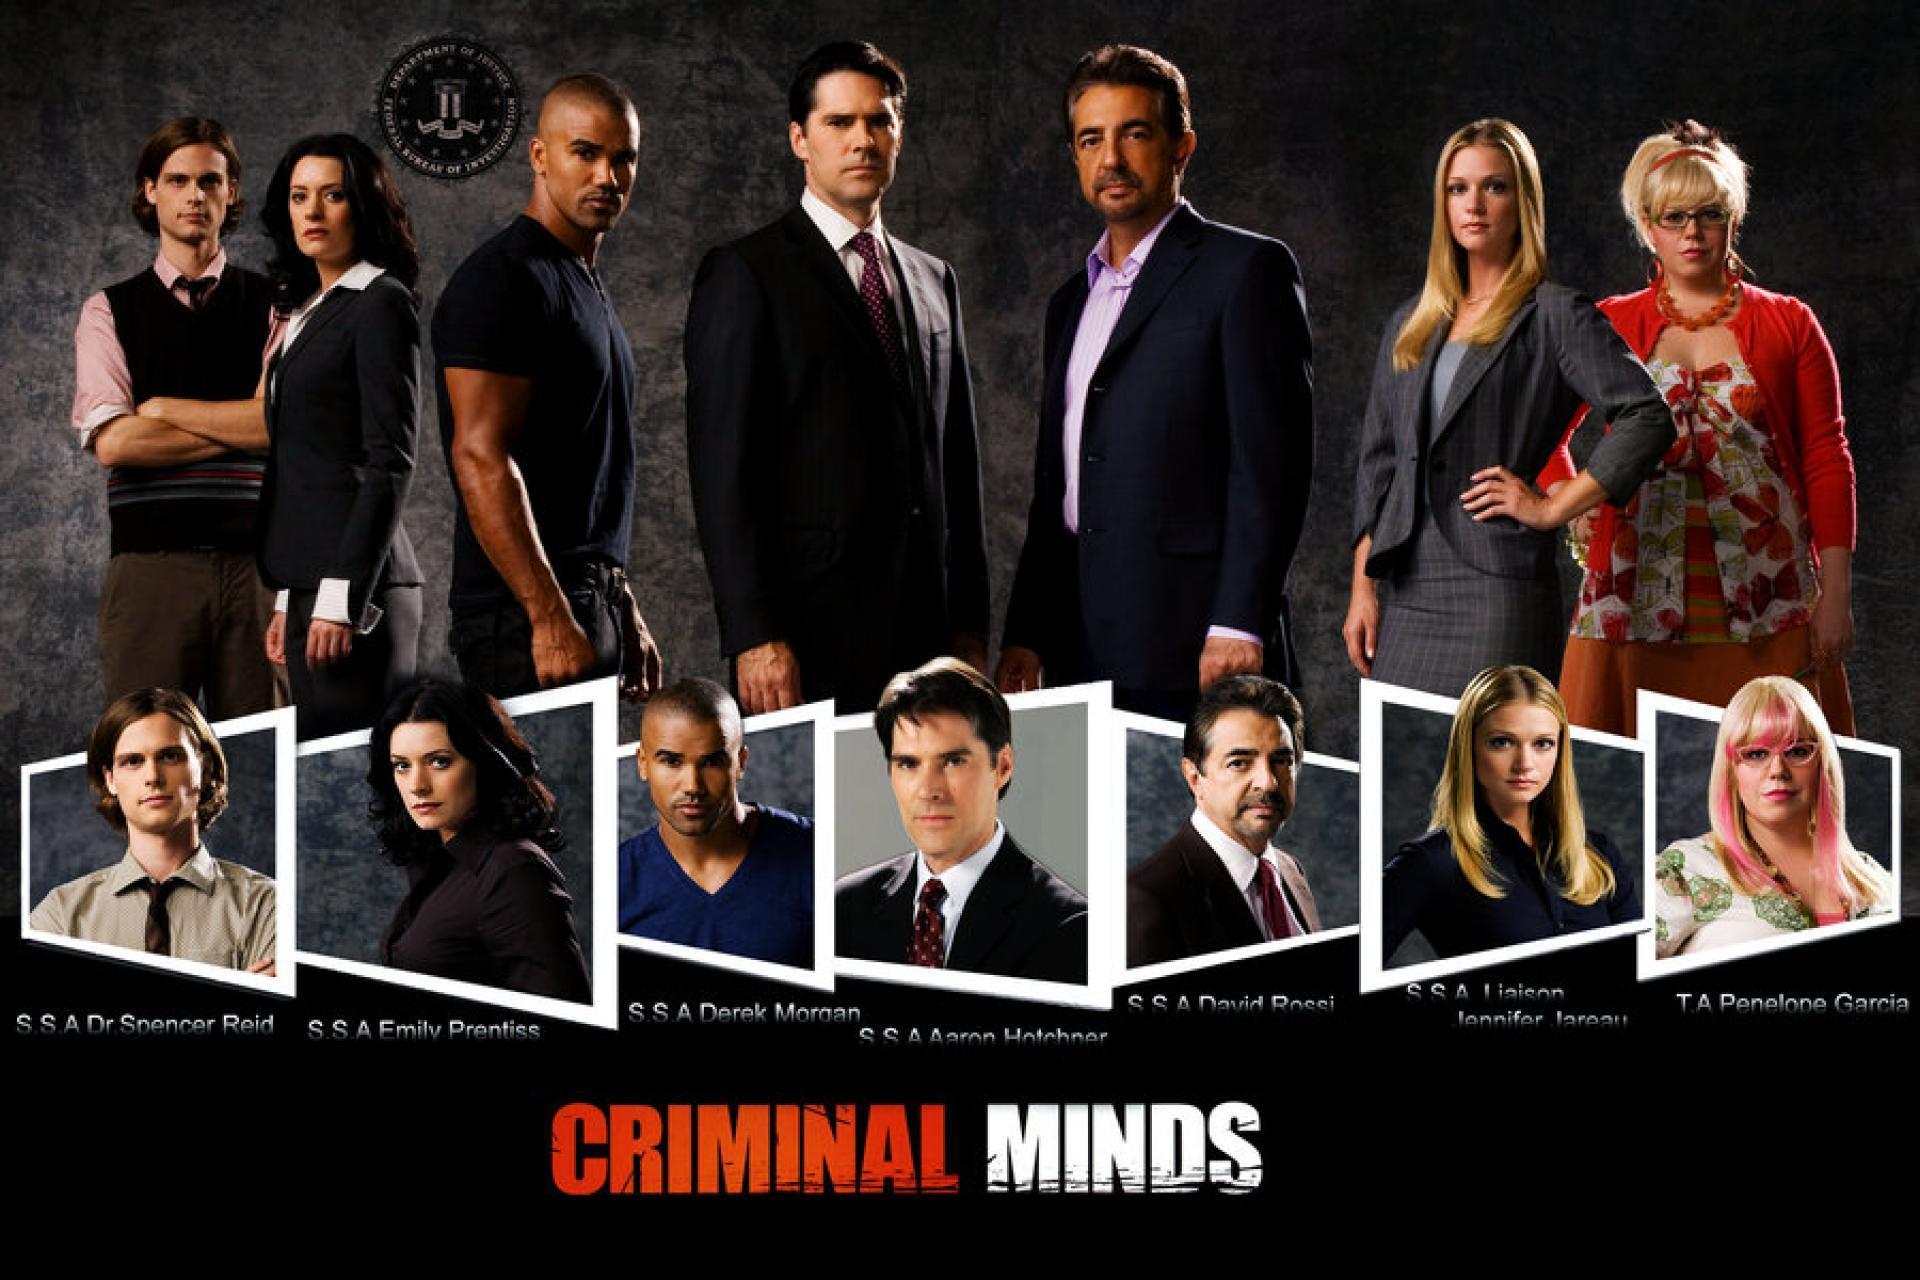 Criminal Minds Wallpaper. Criminal Minds